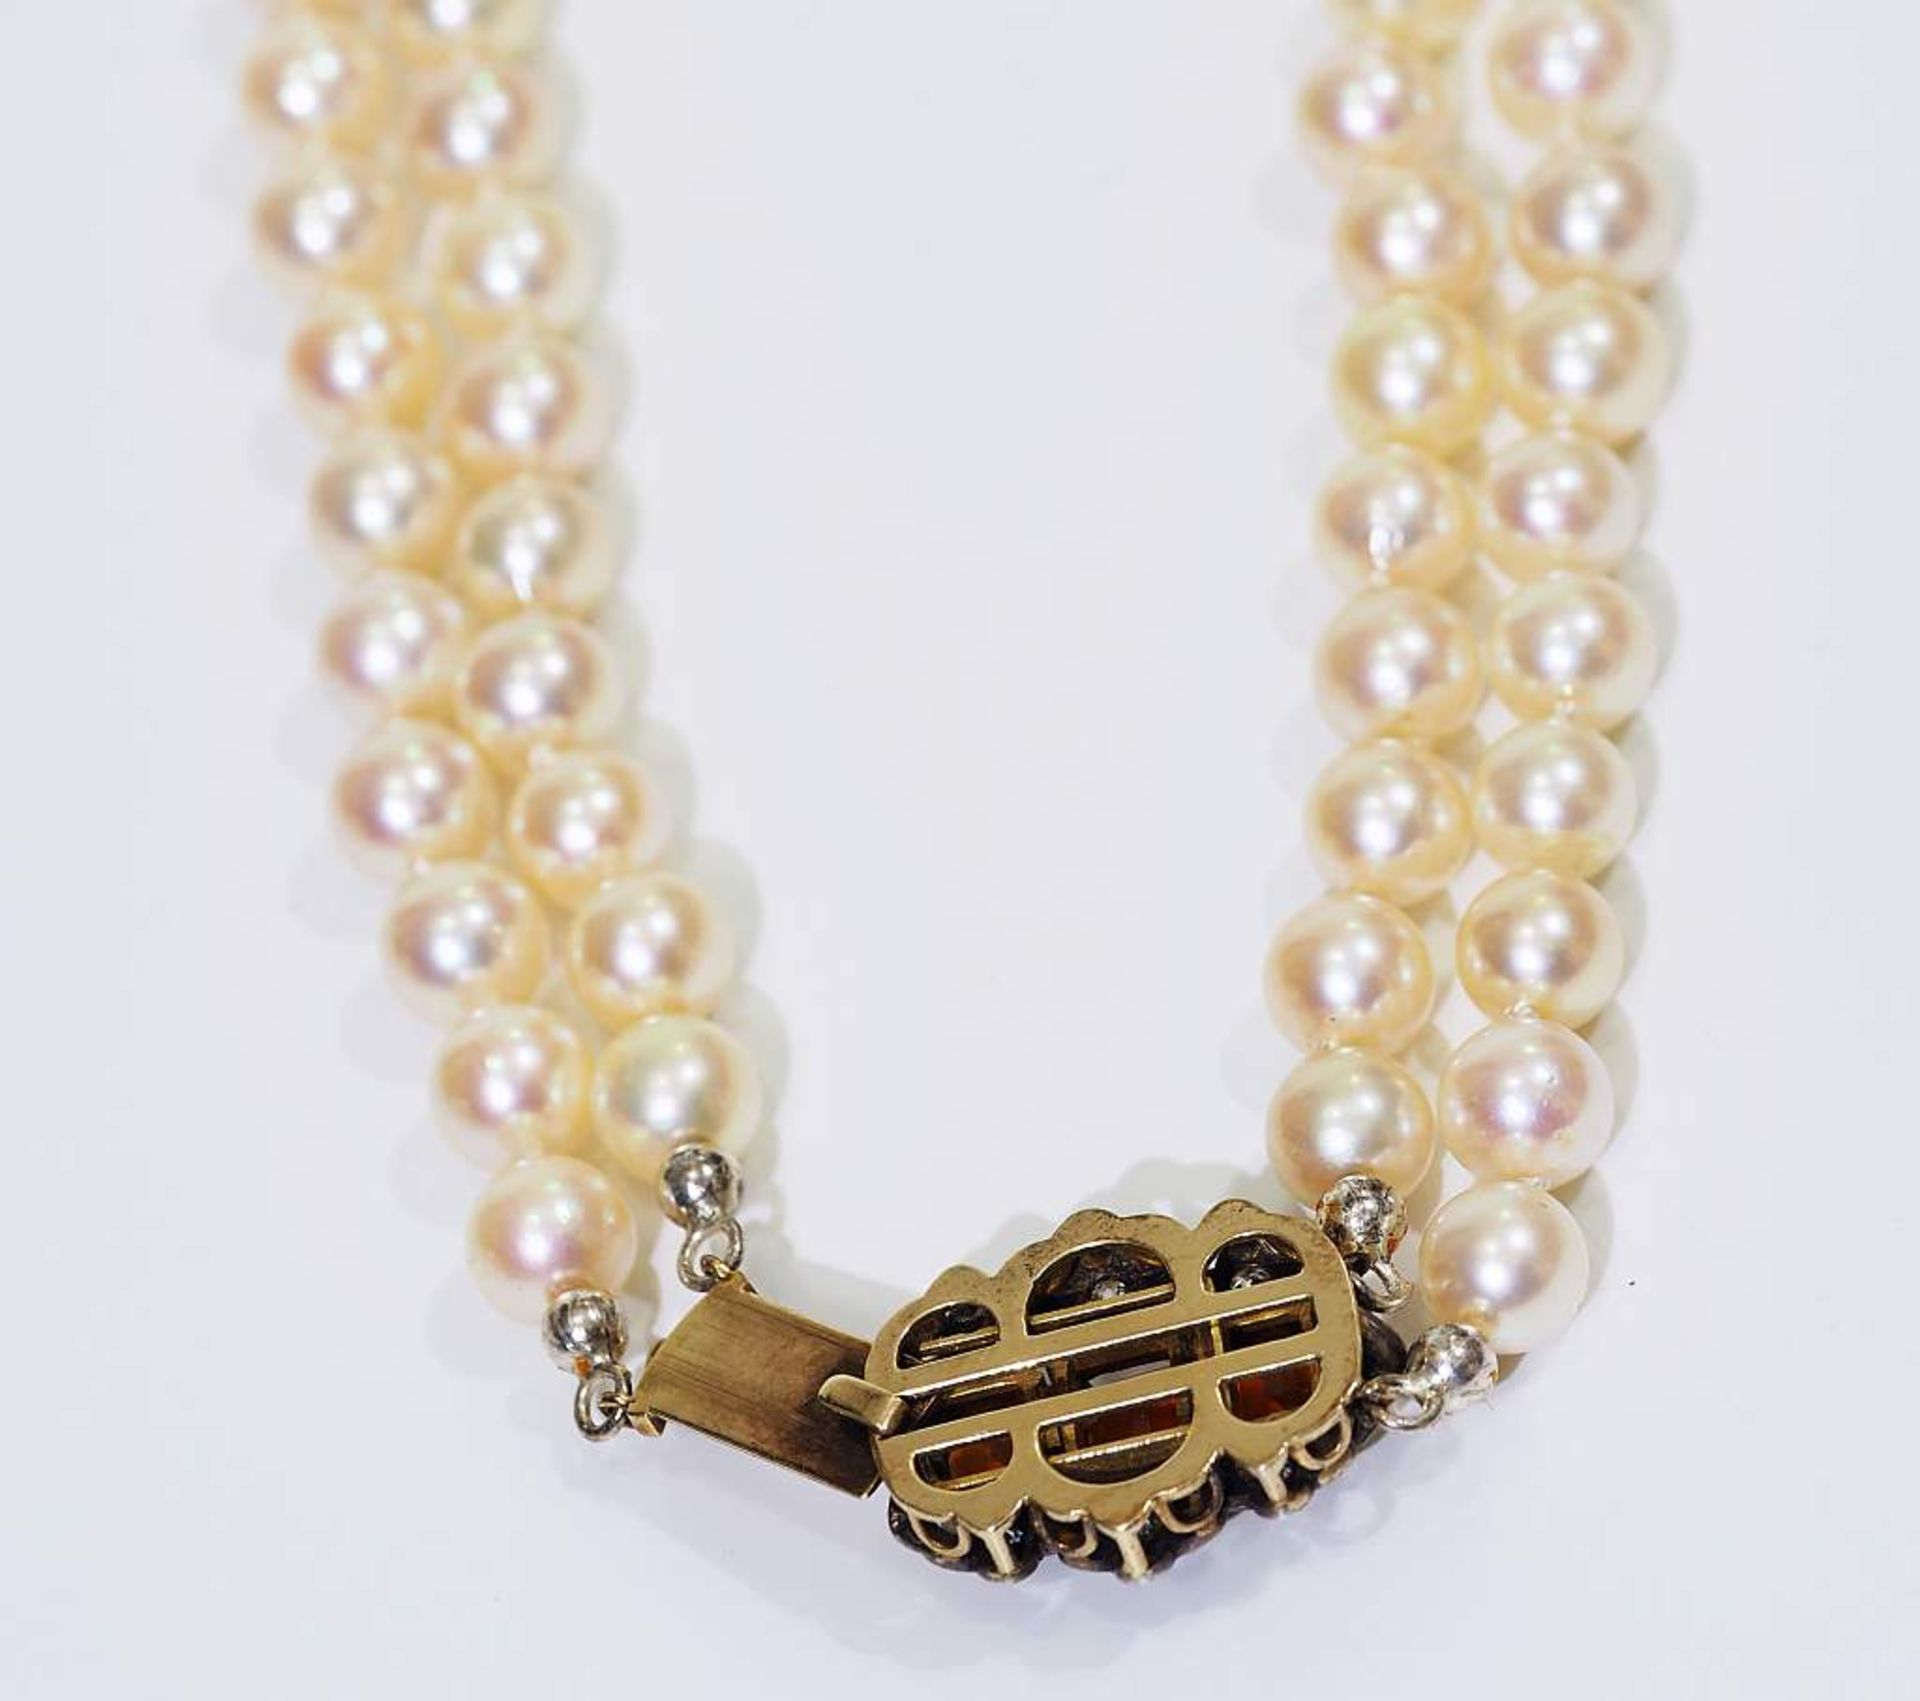 Zweireihige Perlenkette.Zweireihige Perlenkette, mit dekorativem Verschluss, 750er Gelb-/Weißgold, - Bild 5 aus 5